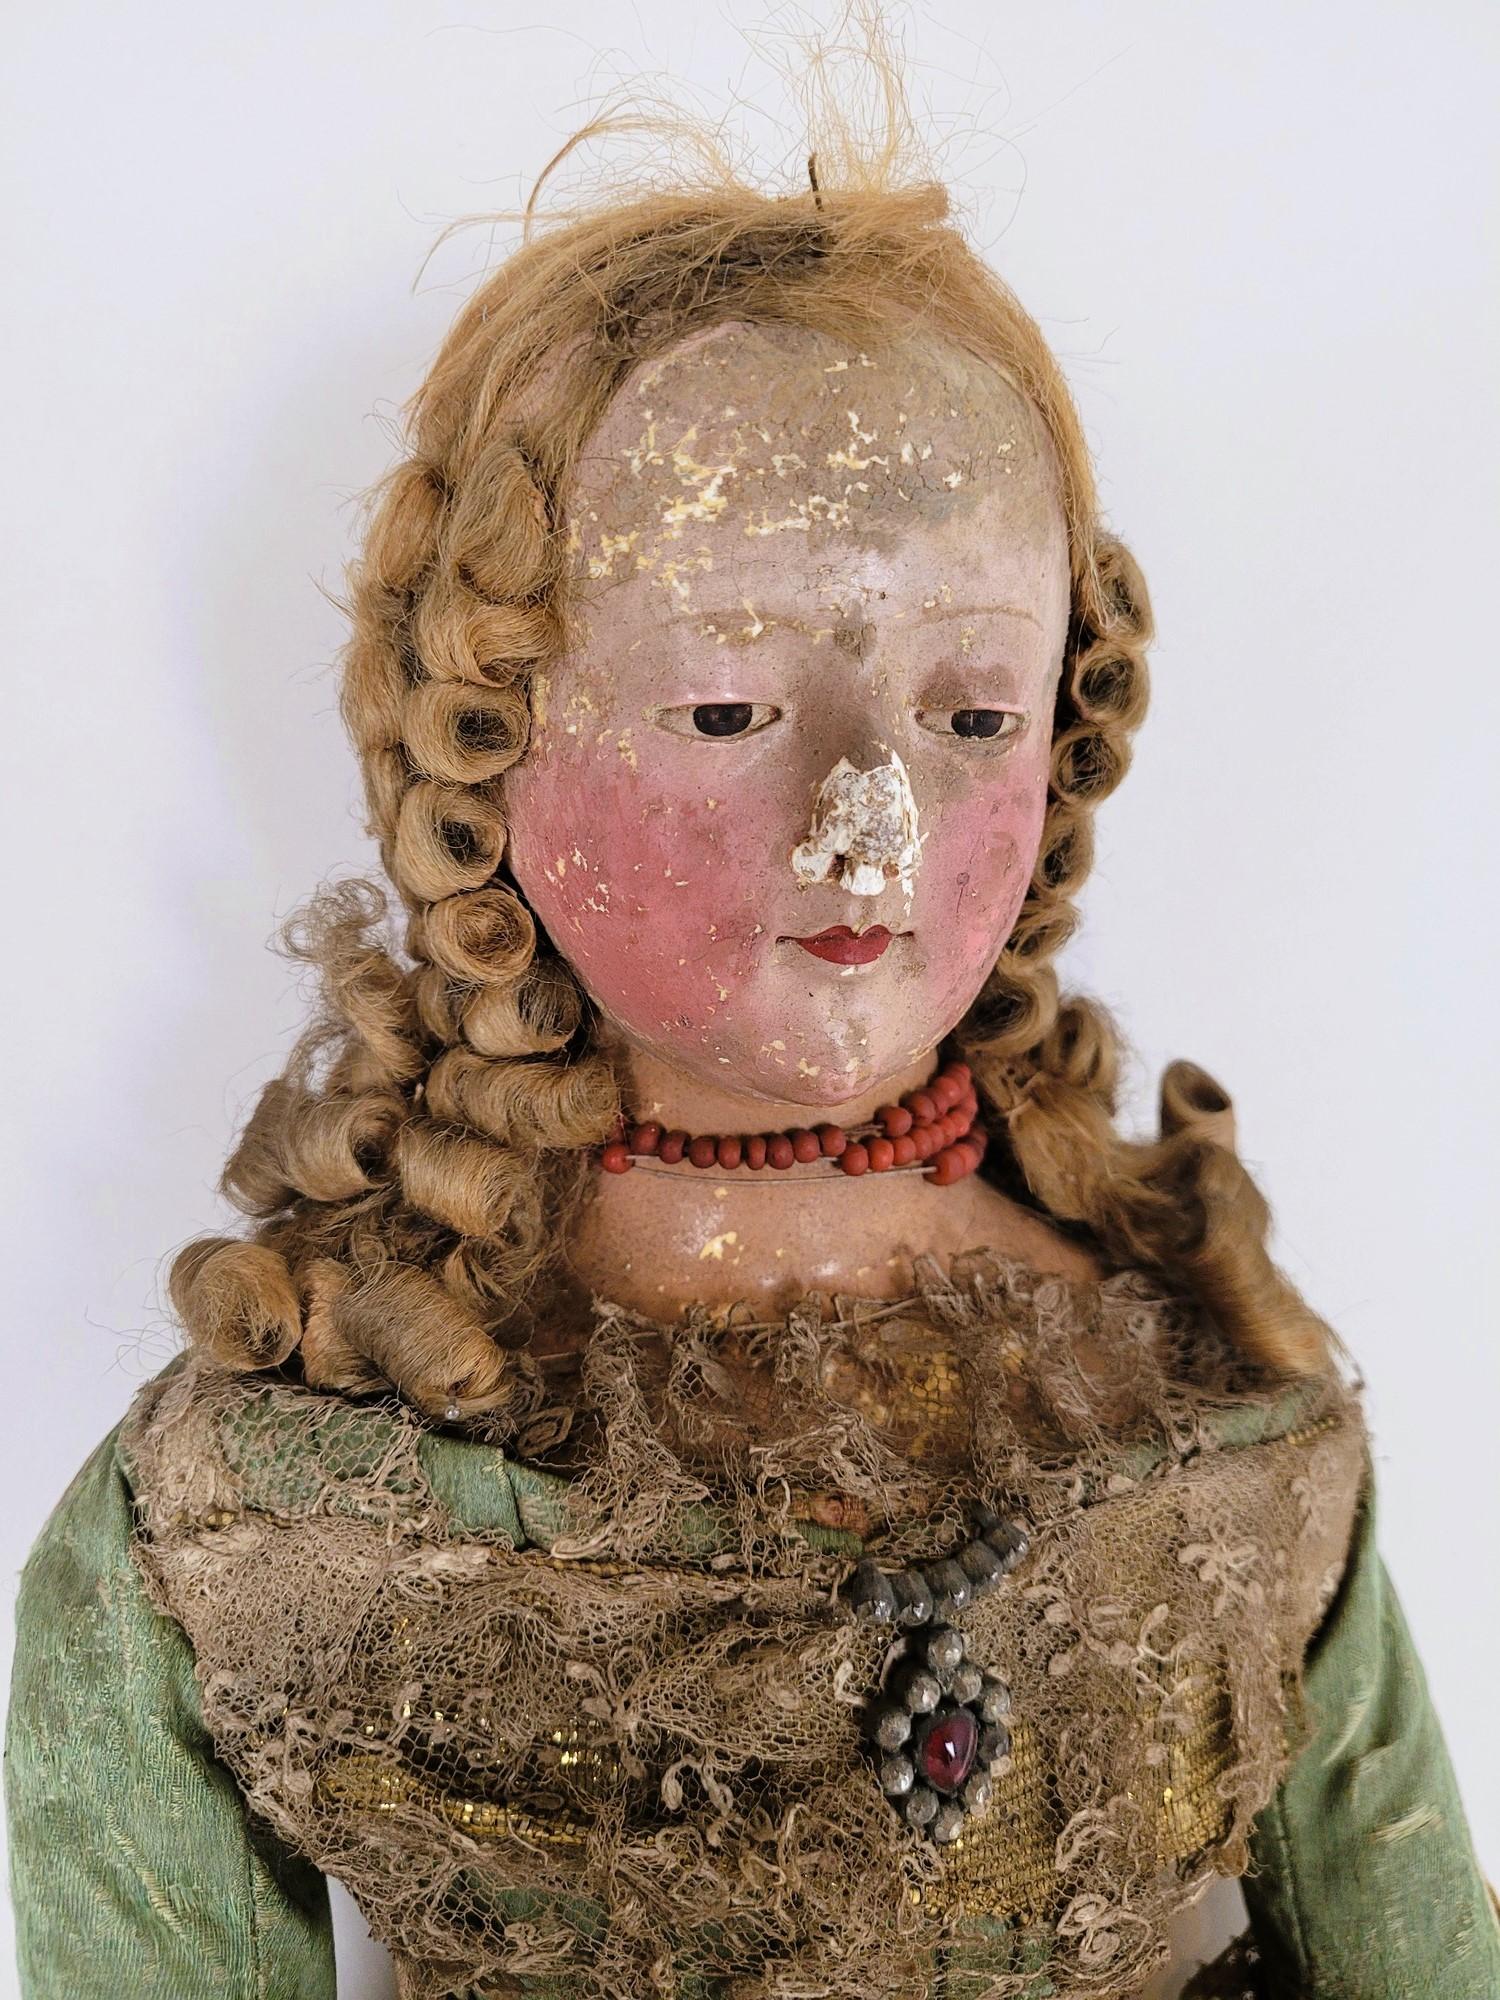 Gegliederte Puppe, 18. Jahrhundert (Europäisch)